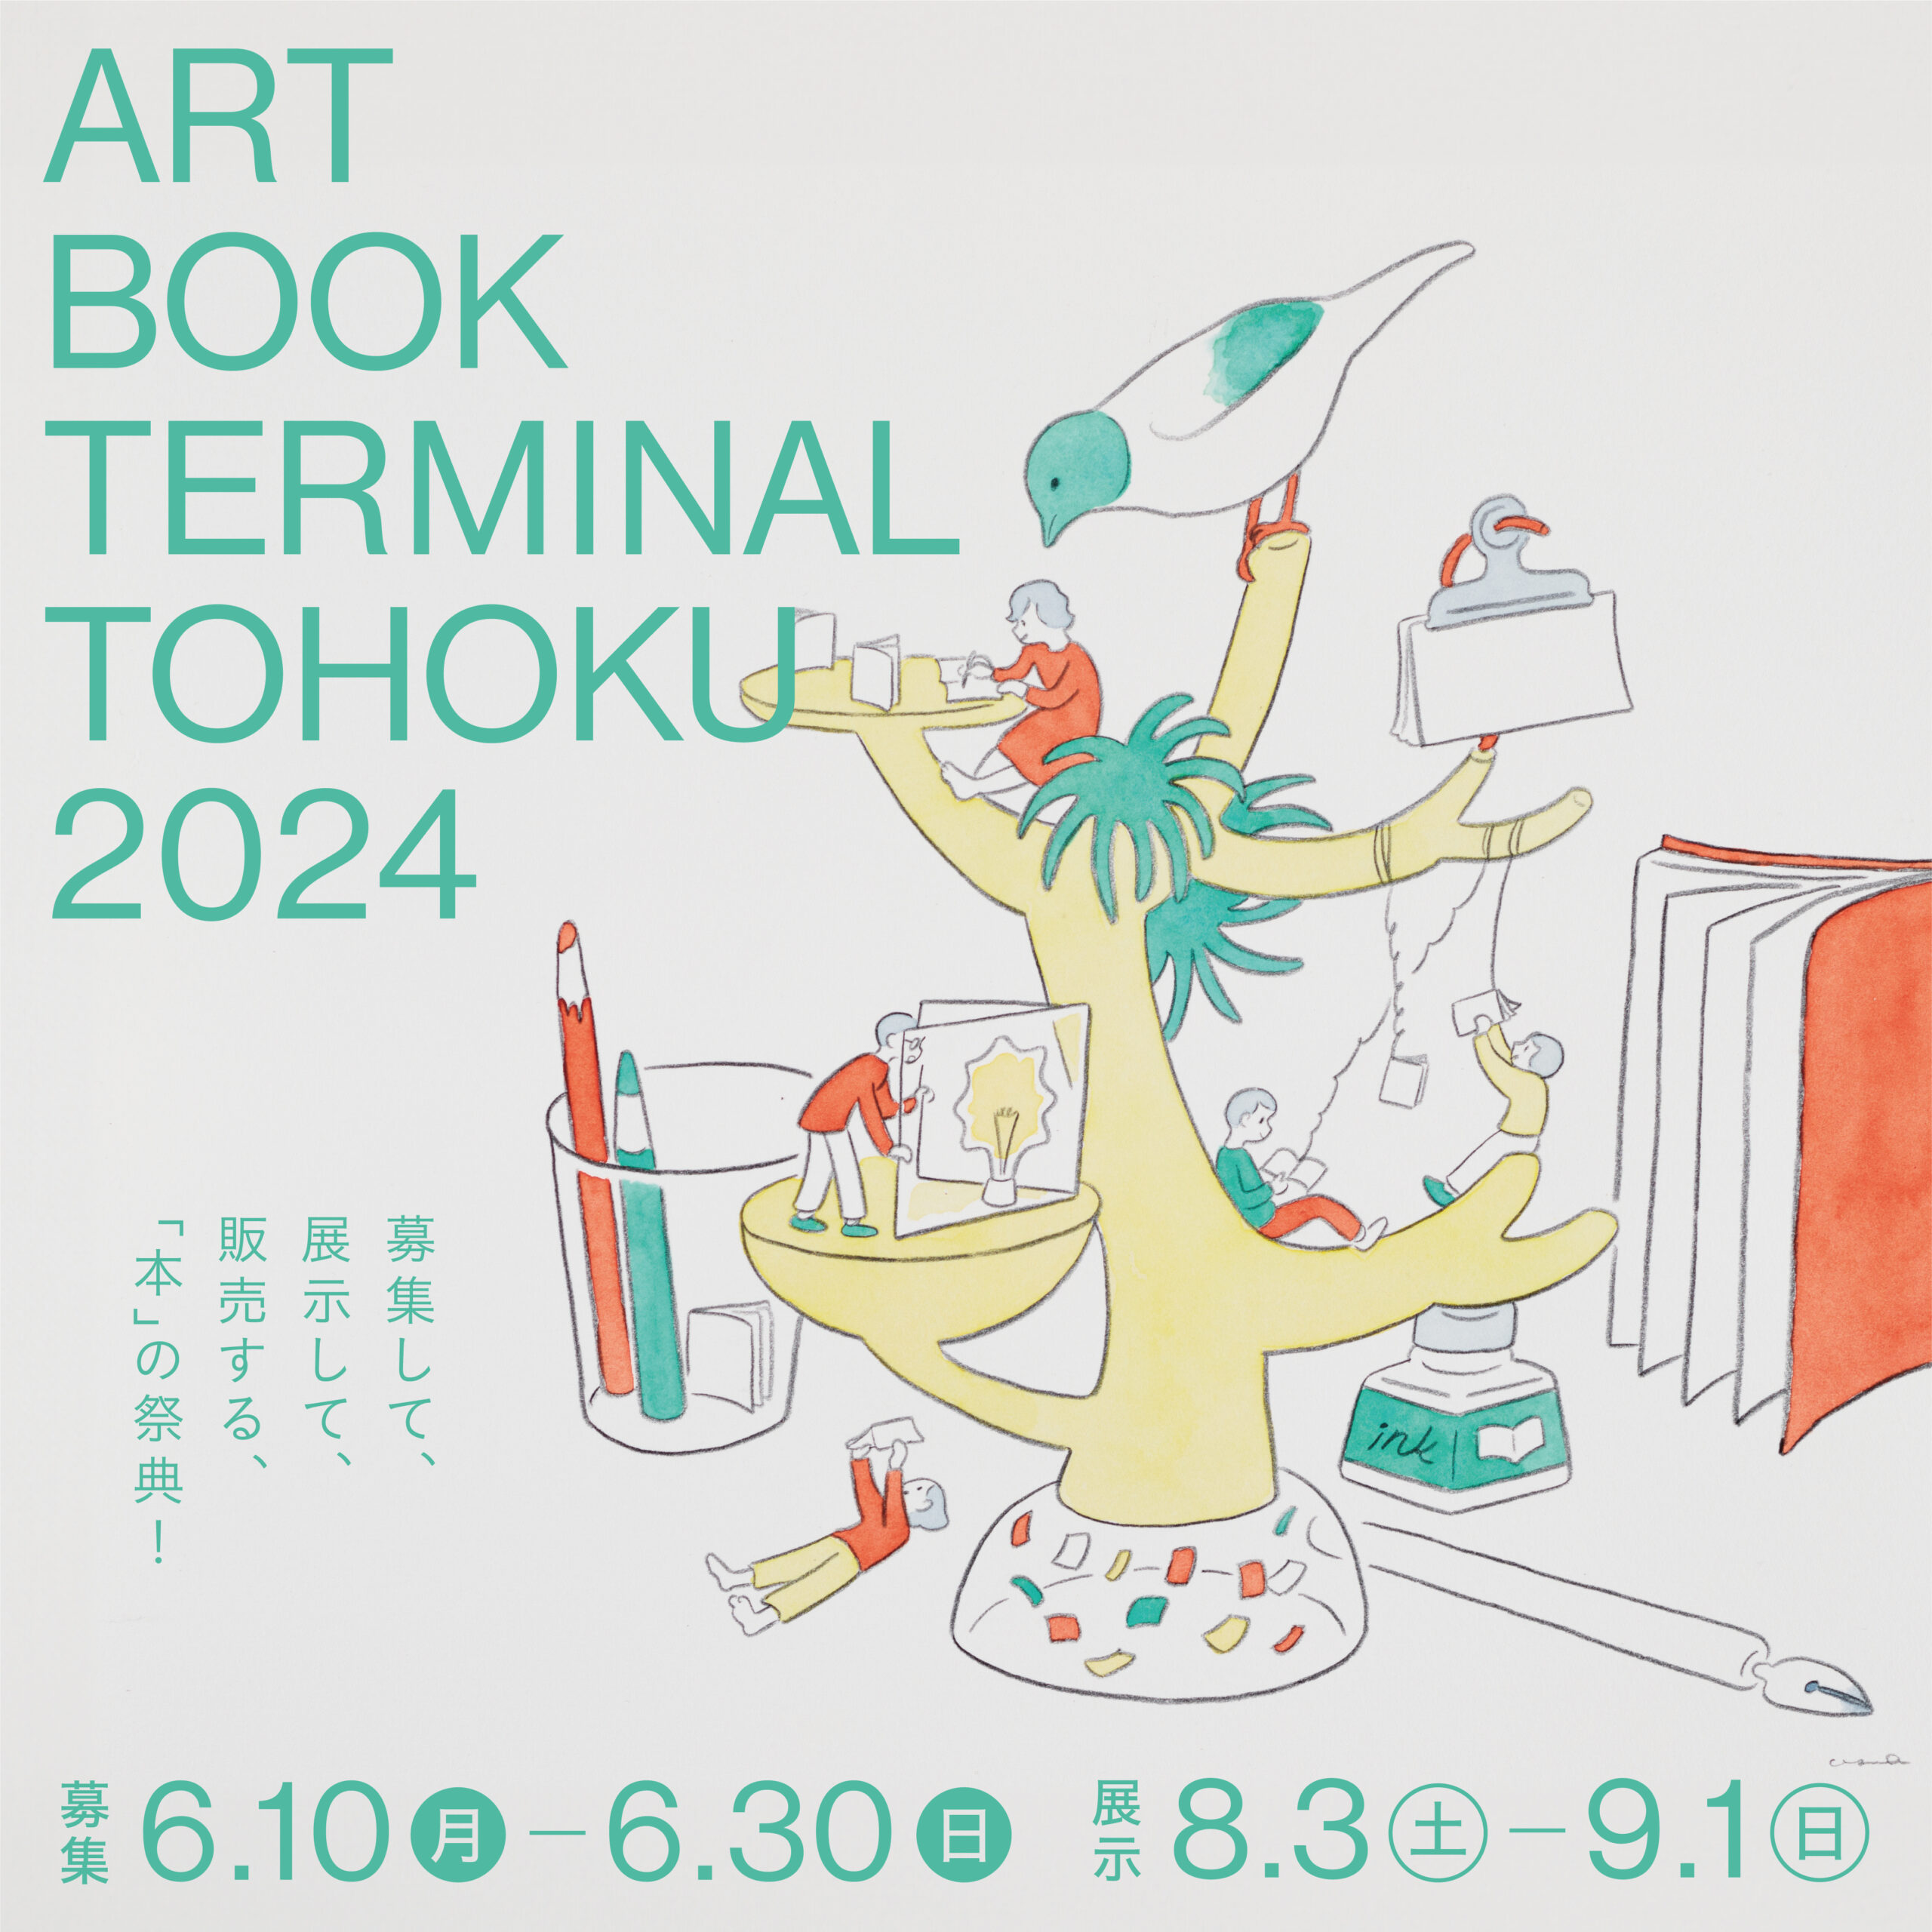 ART BOOK TERMINAL TOHOKU 2024